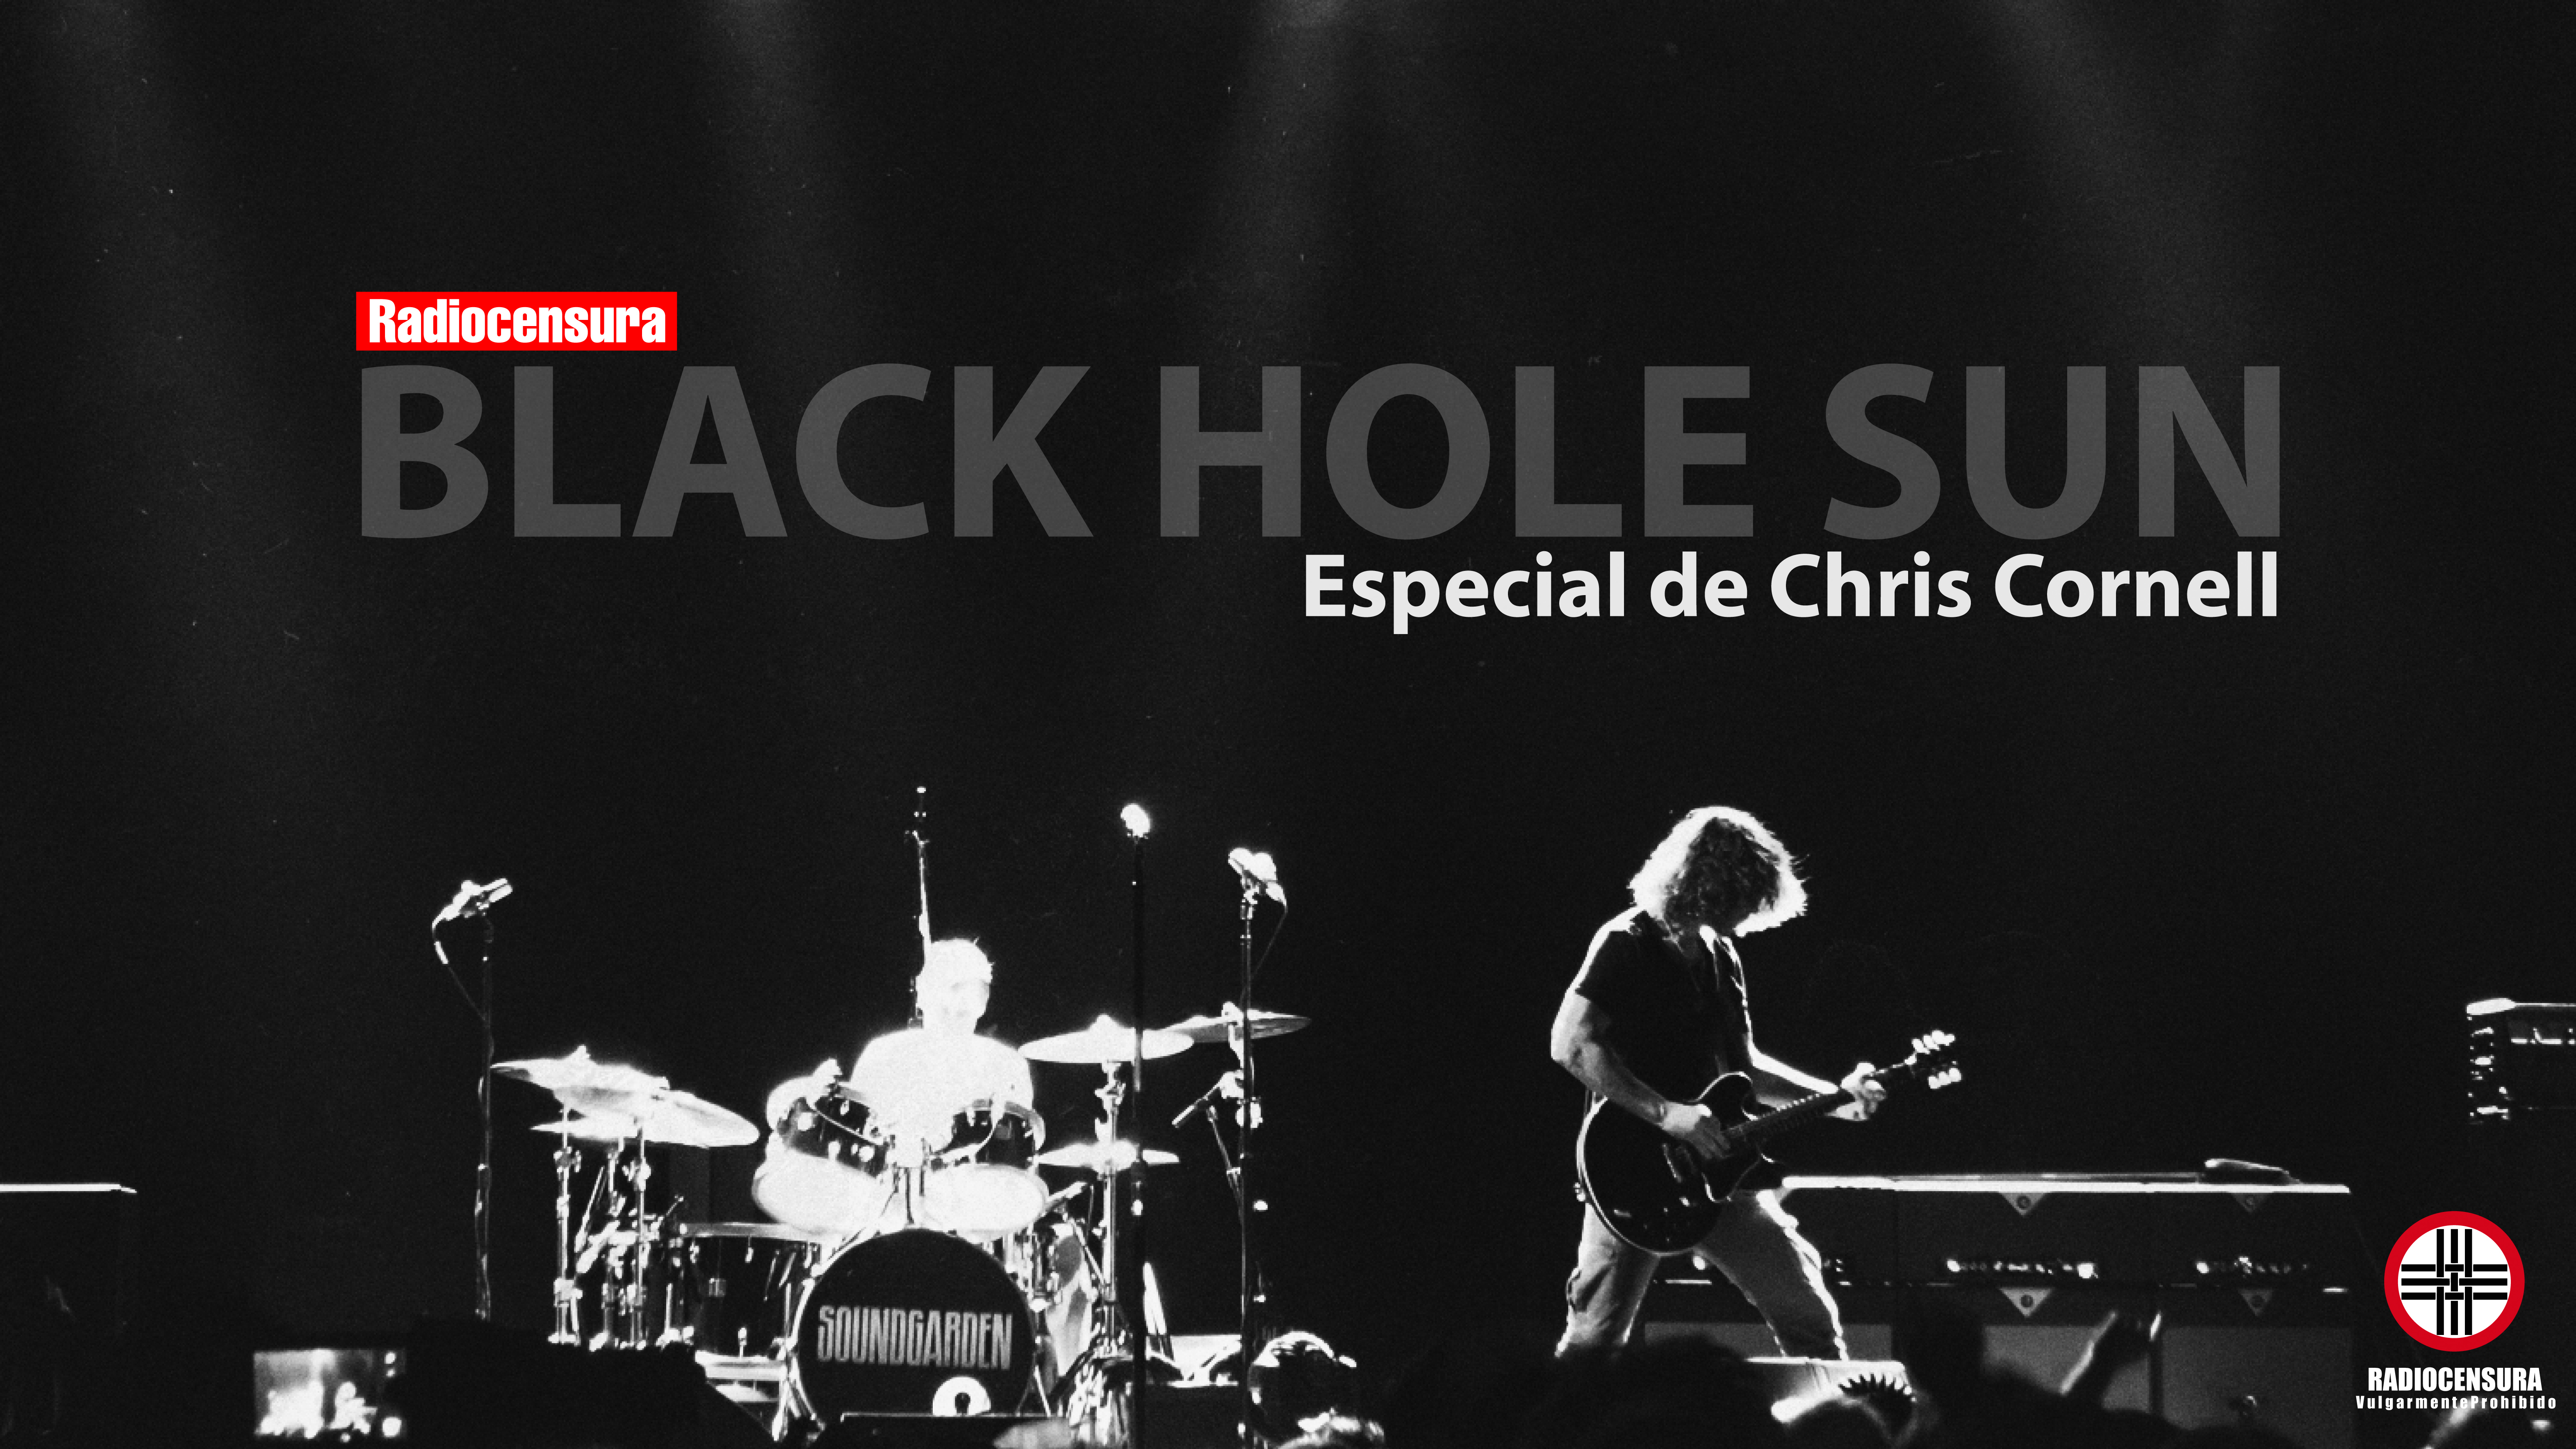 «Black hole sun» Especial de Chris Cornell